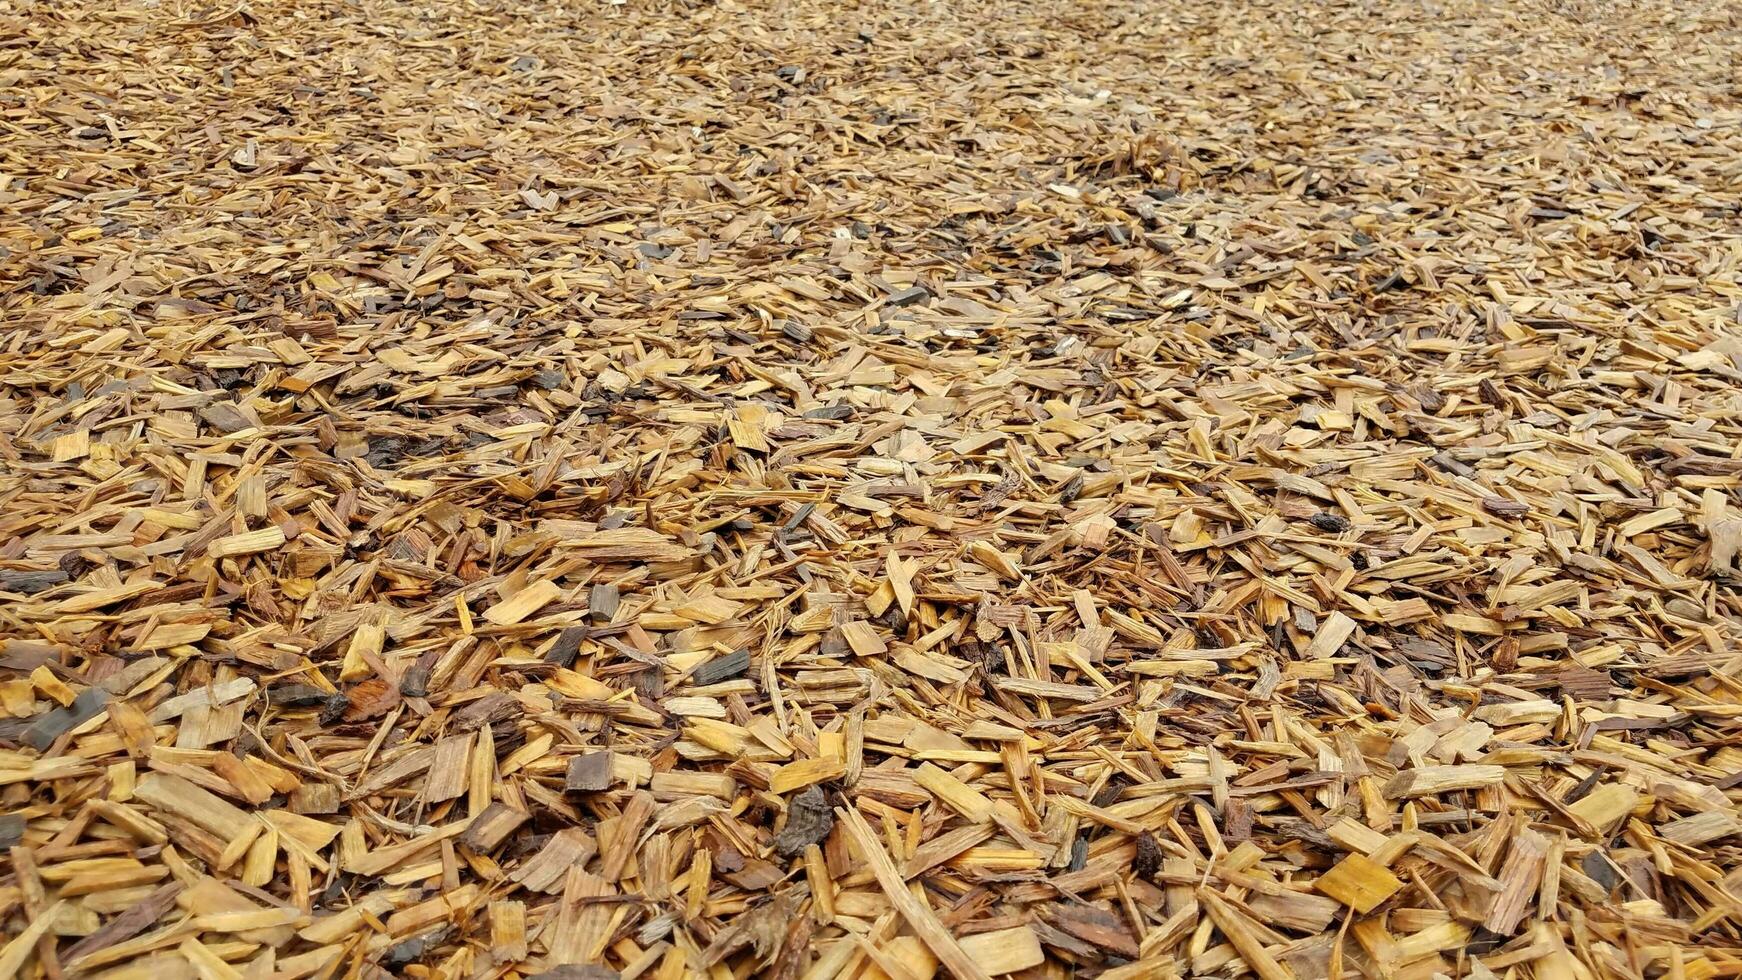 brun fuktig träflis eller kompost på marken foto